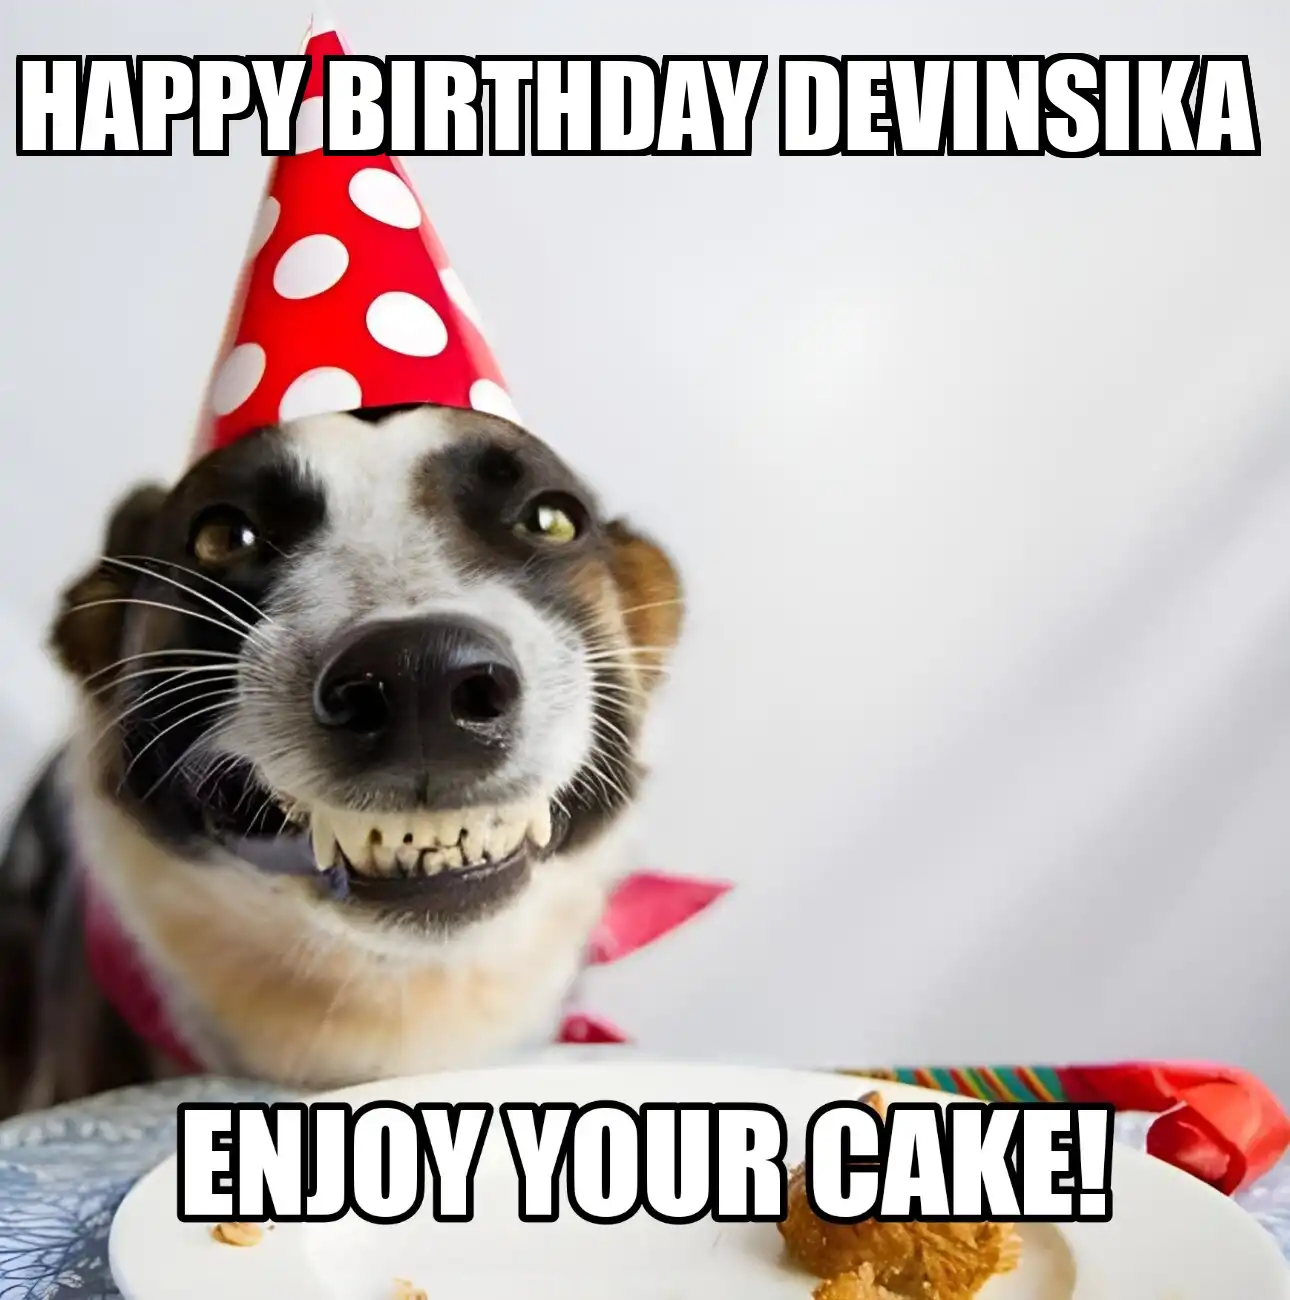 Happy Birthday Devinsika Enjoy Your Cake Dog Meme